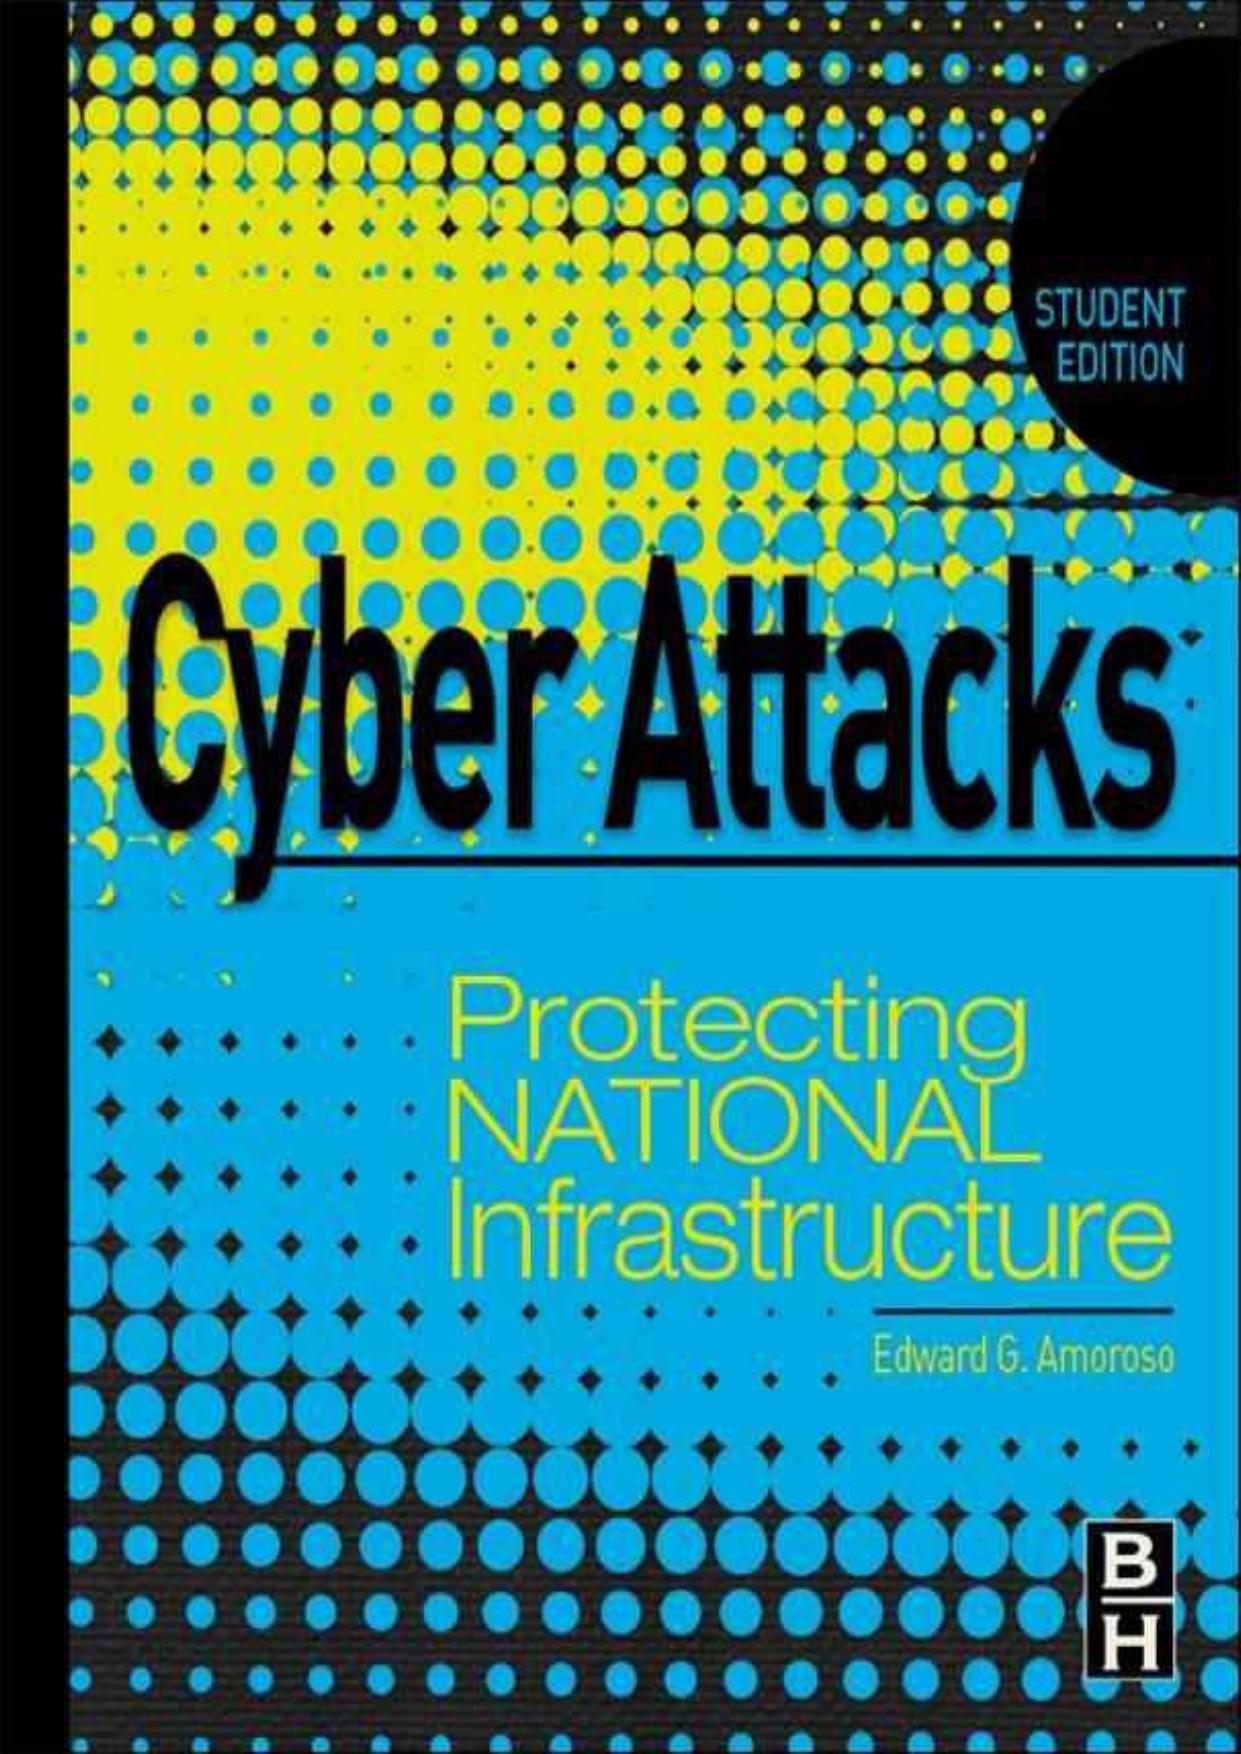 Cyber Attacks by Edward Amoroso